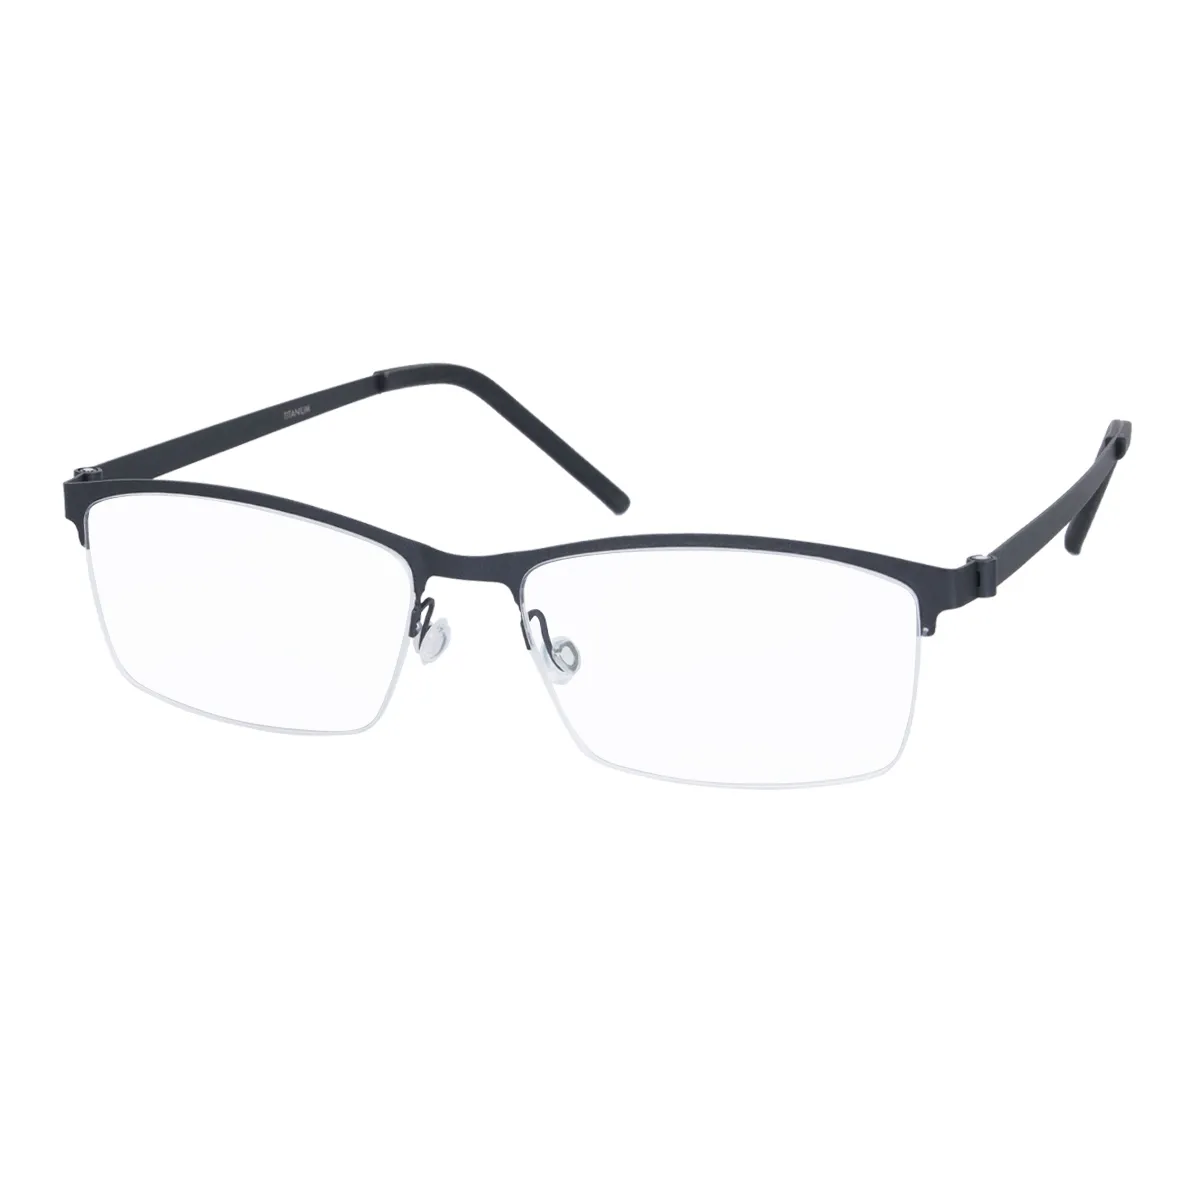 Evan - Half-Rim Black Glasses for Men - EFE